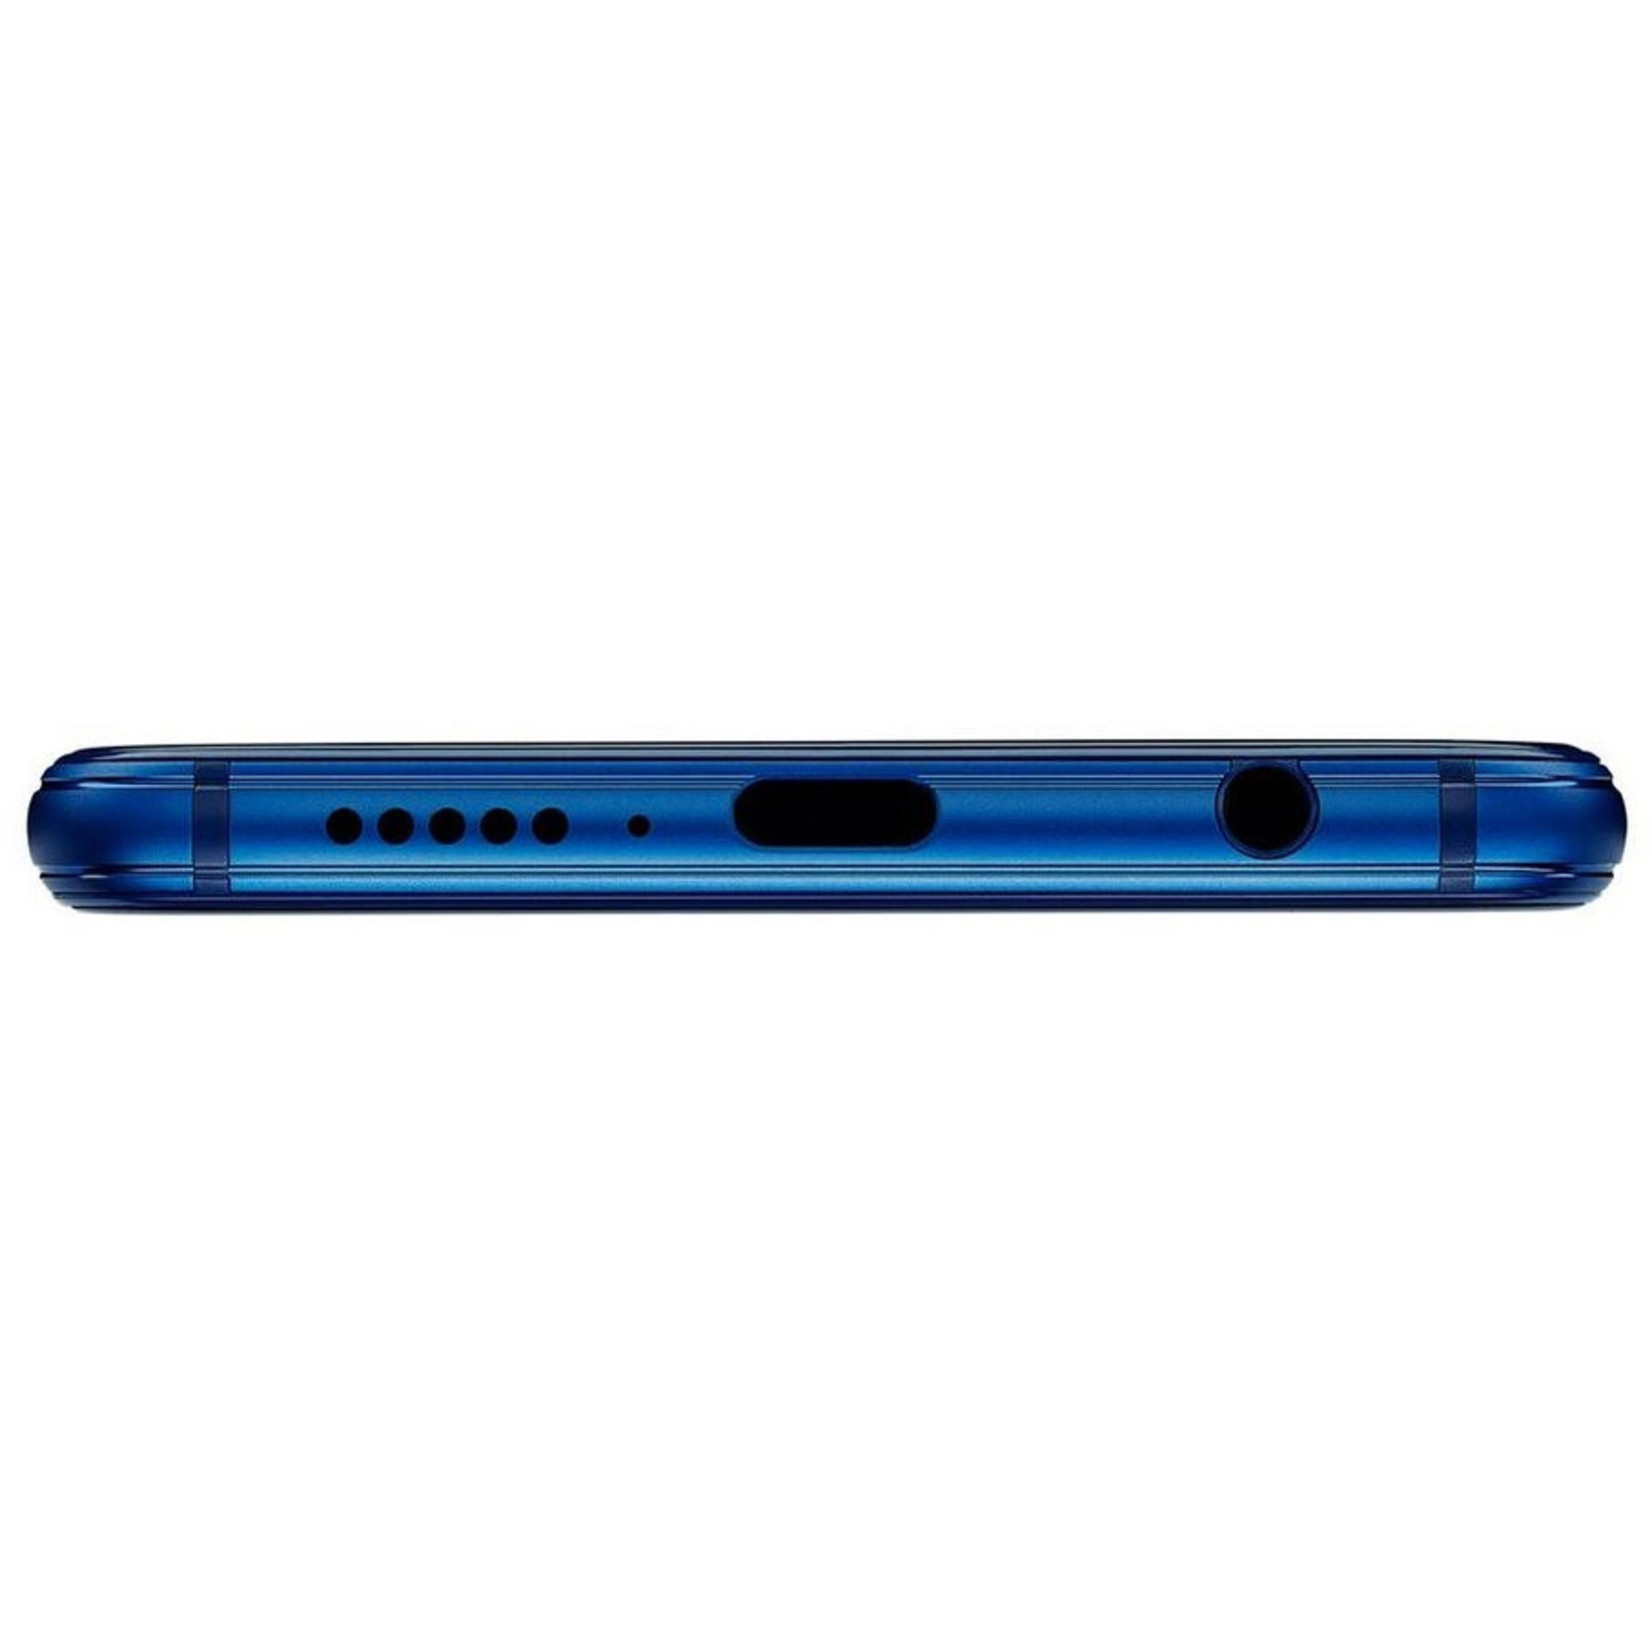 Huawei Huawei P20 Lite Blauw